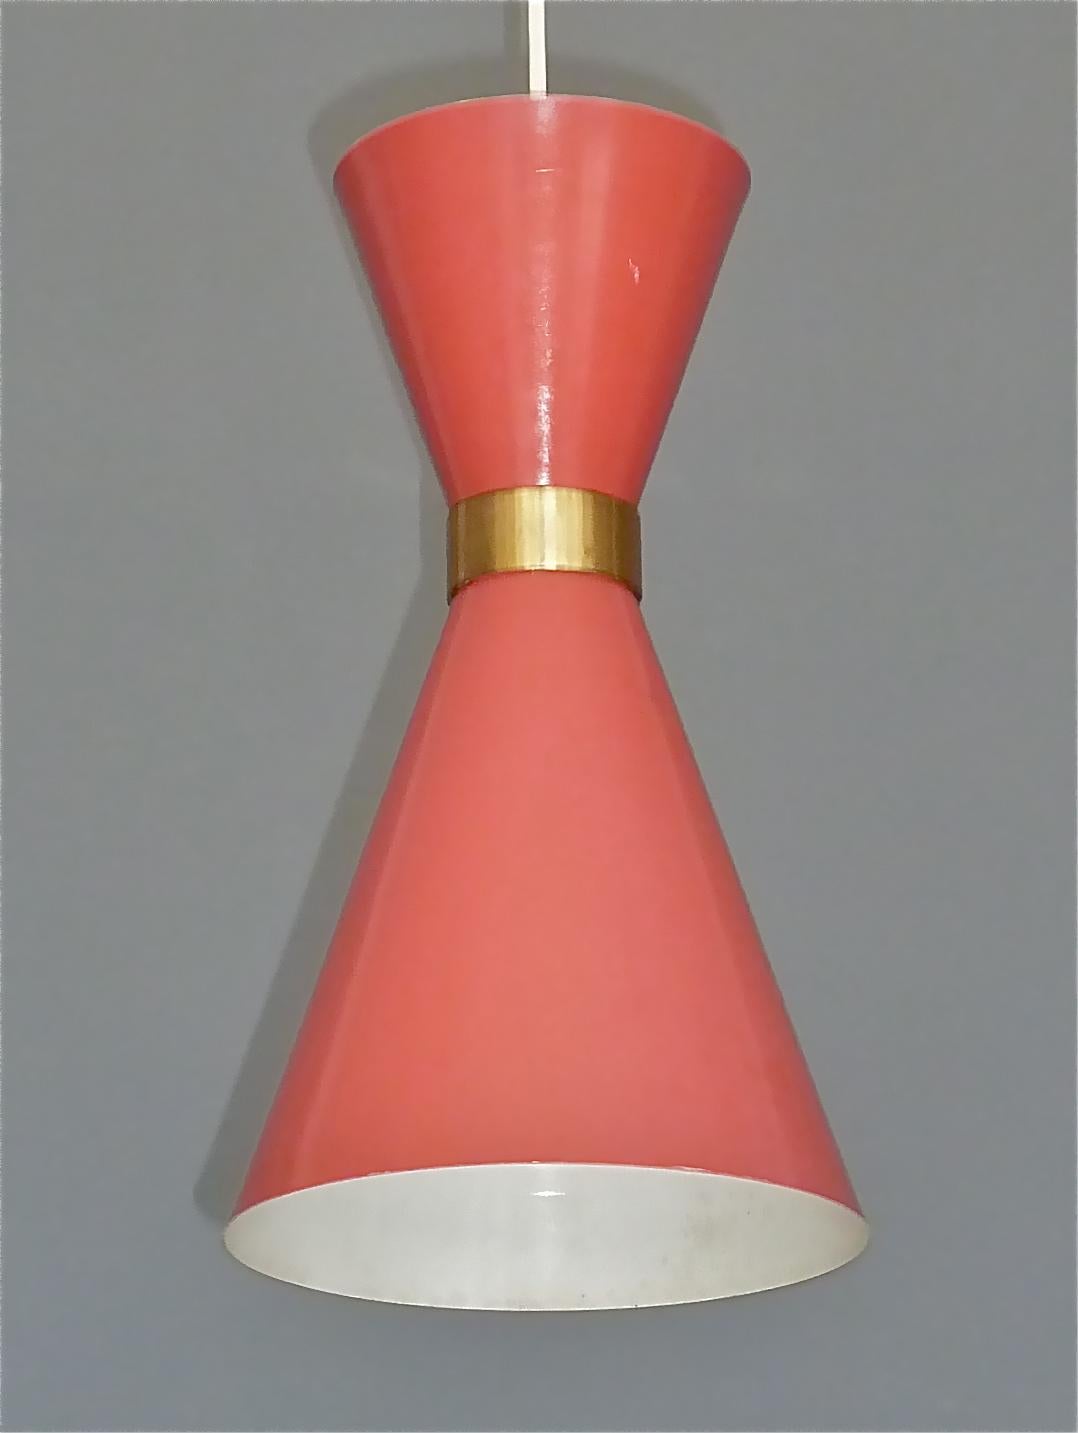 Midcentury Carl Moor BAG Turgi Pendant Lamp Diabolo Red Stilnovo Style 1950s For Sale 1